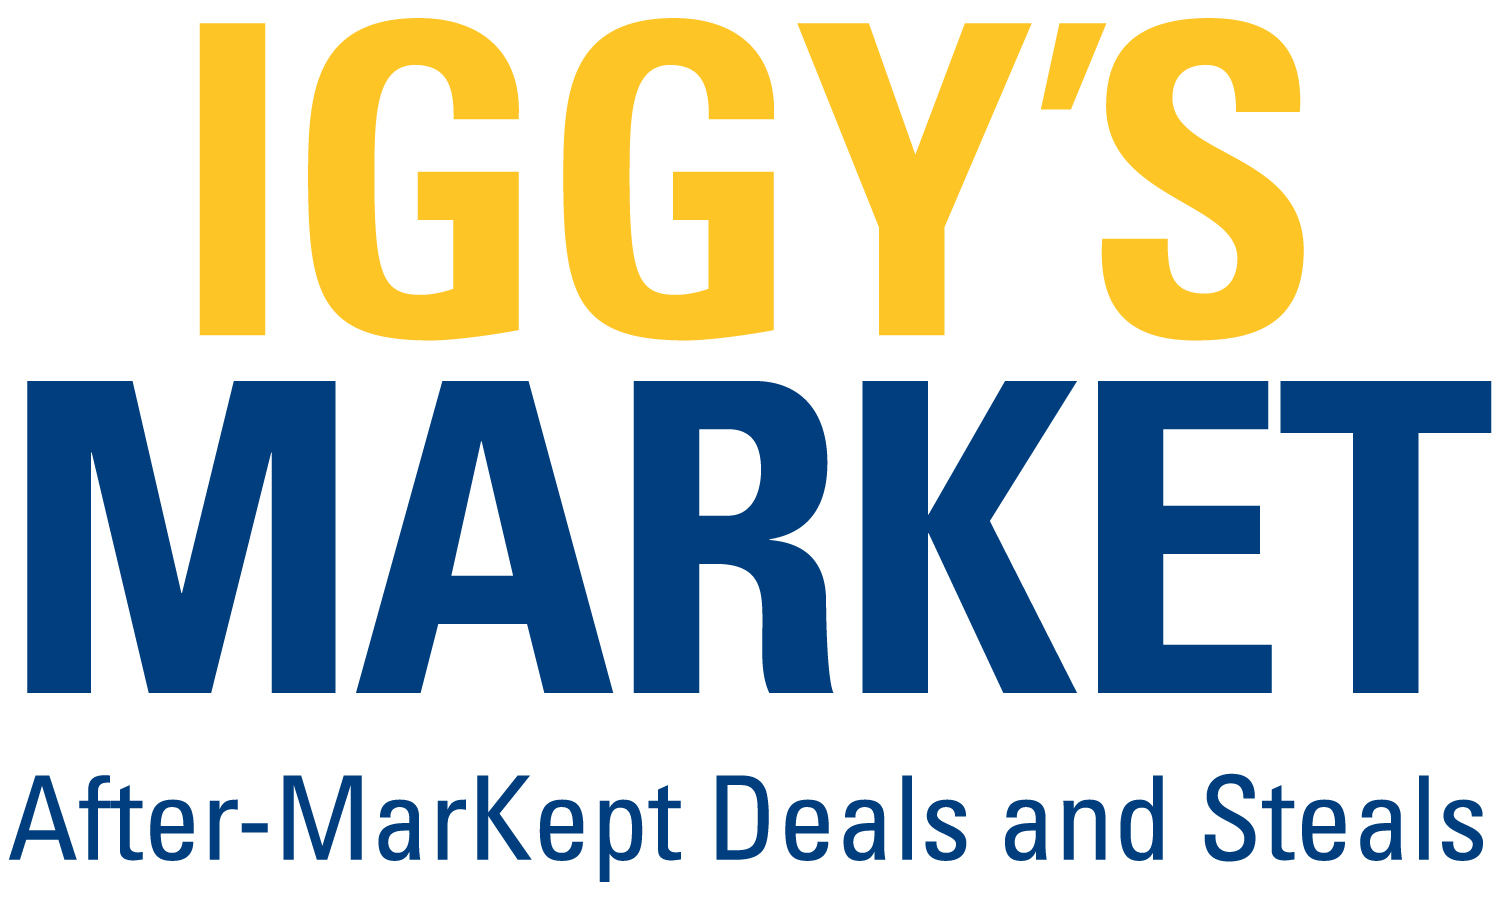 iggys market logo blue and gold